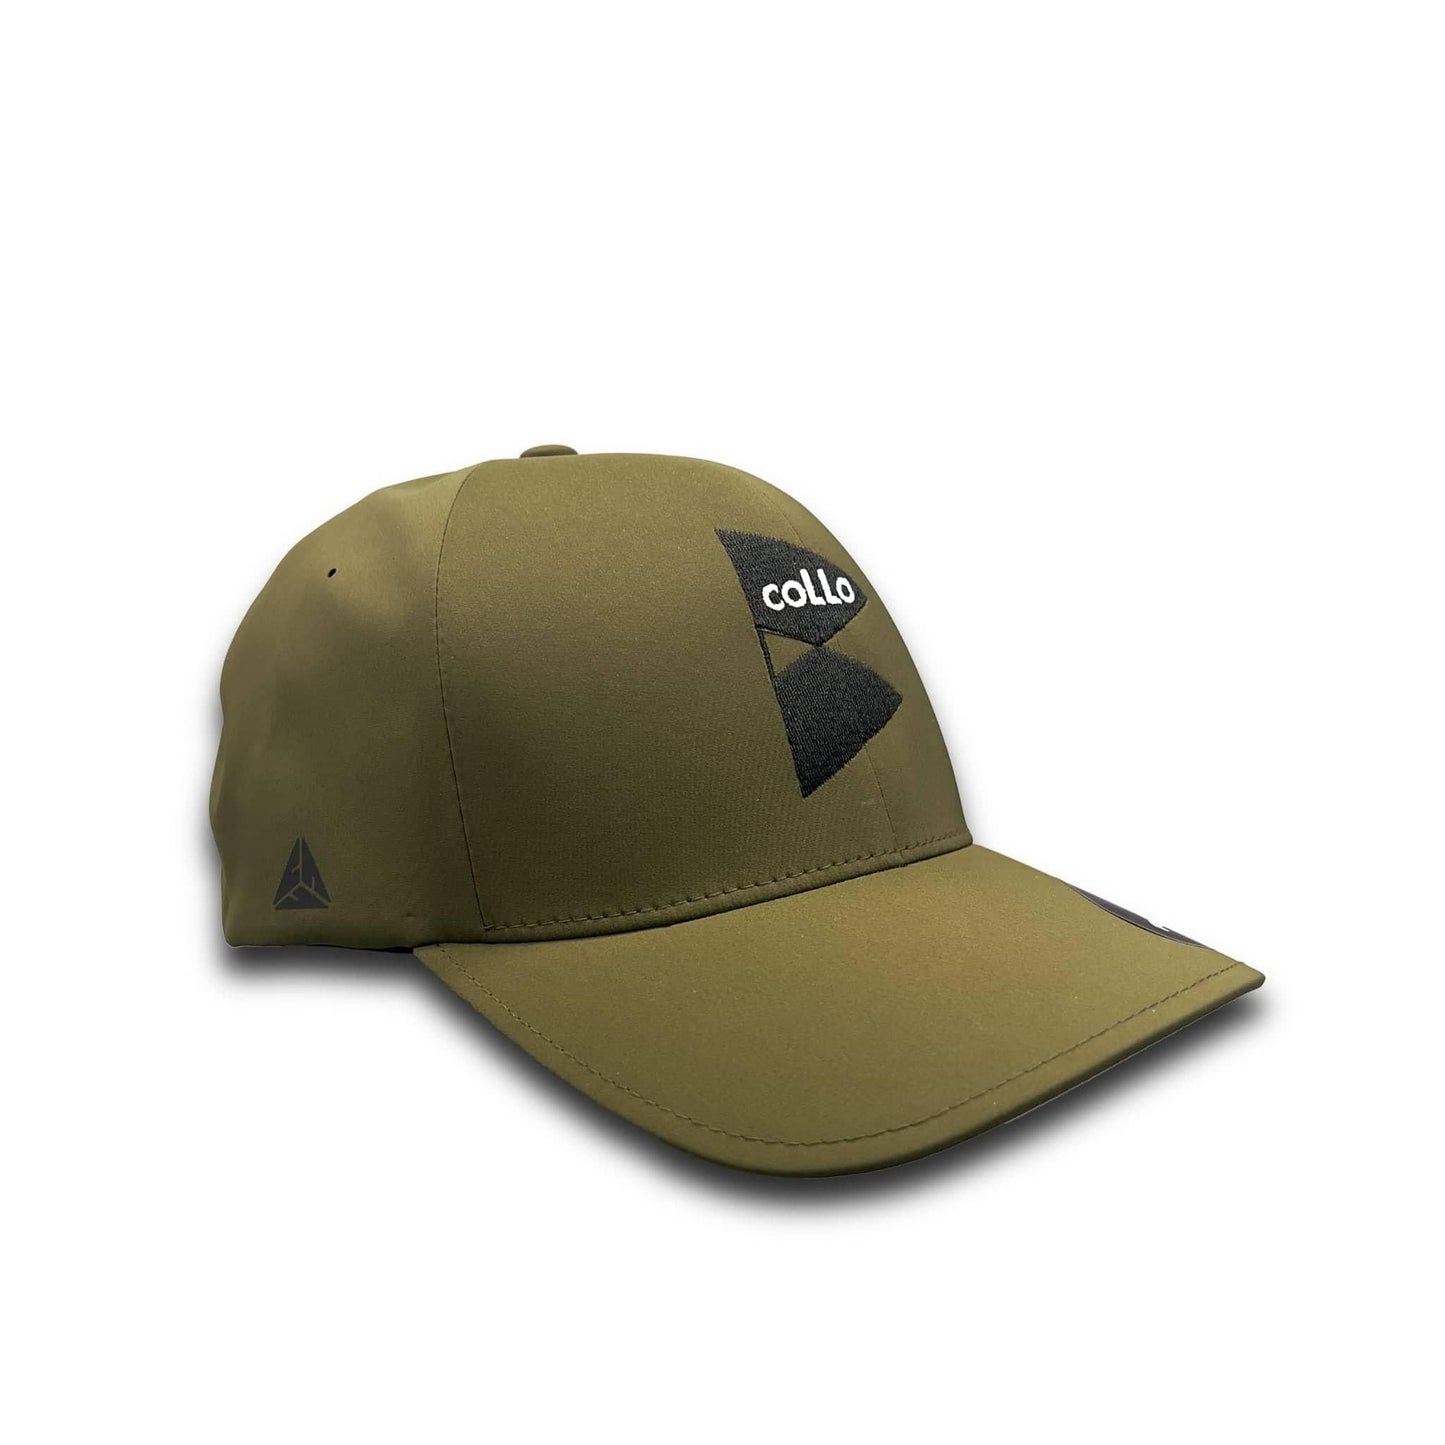 coLLo AppareL Hats L/XL / Olive Trenton